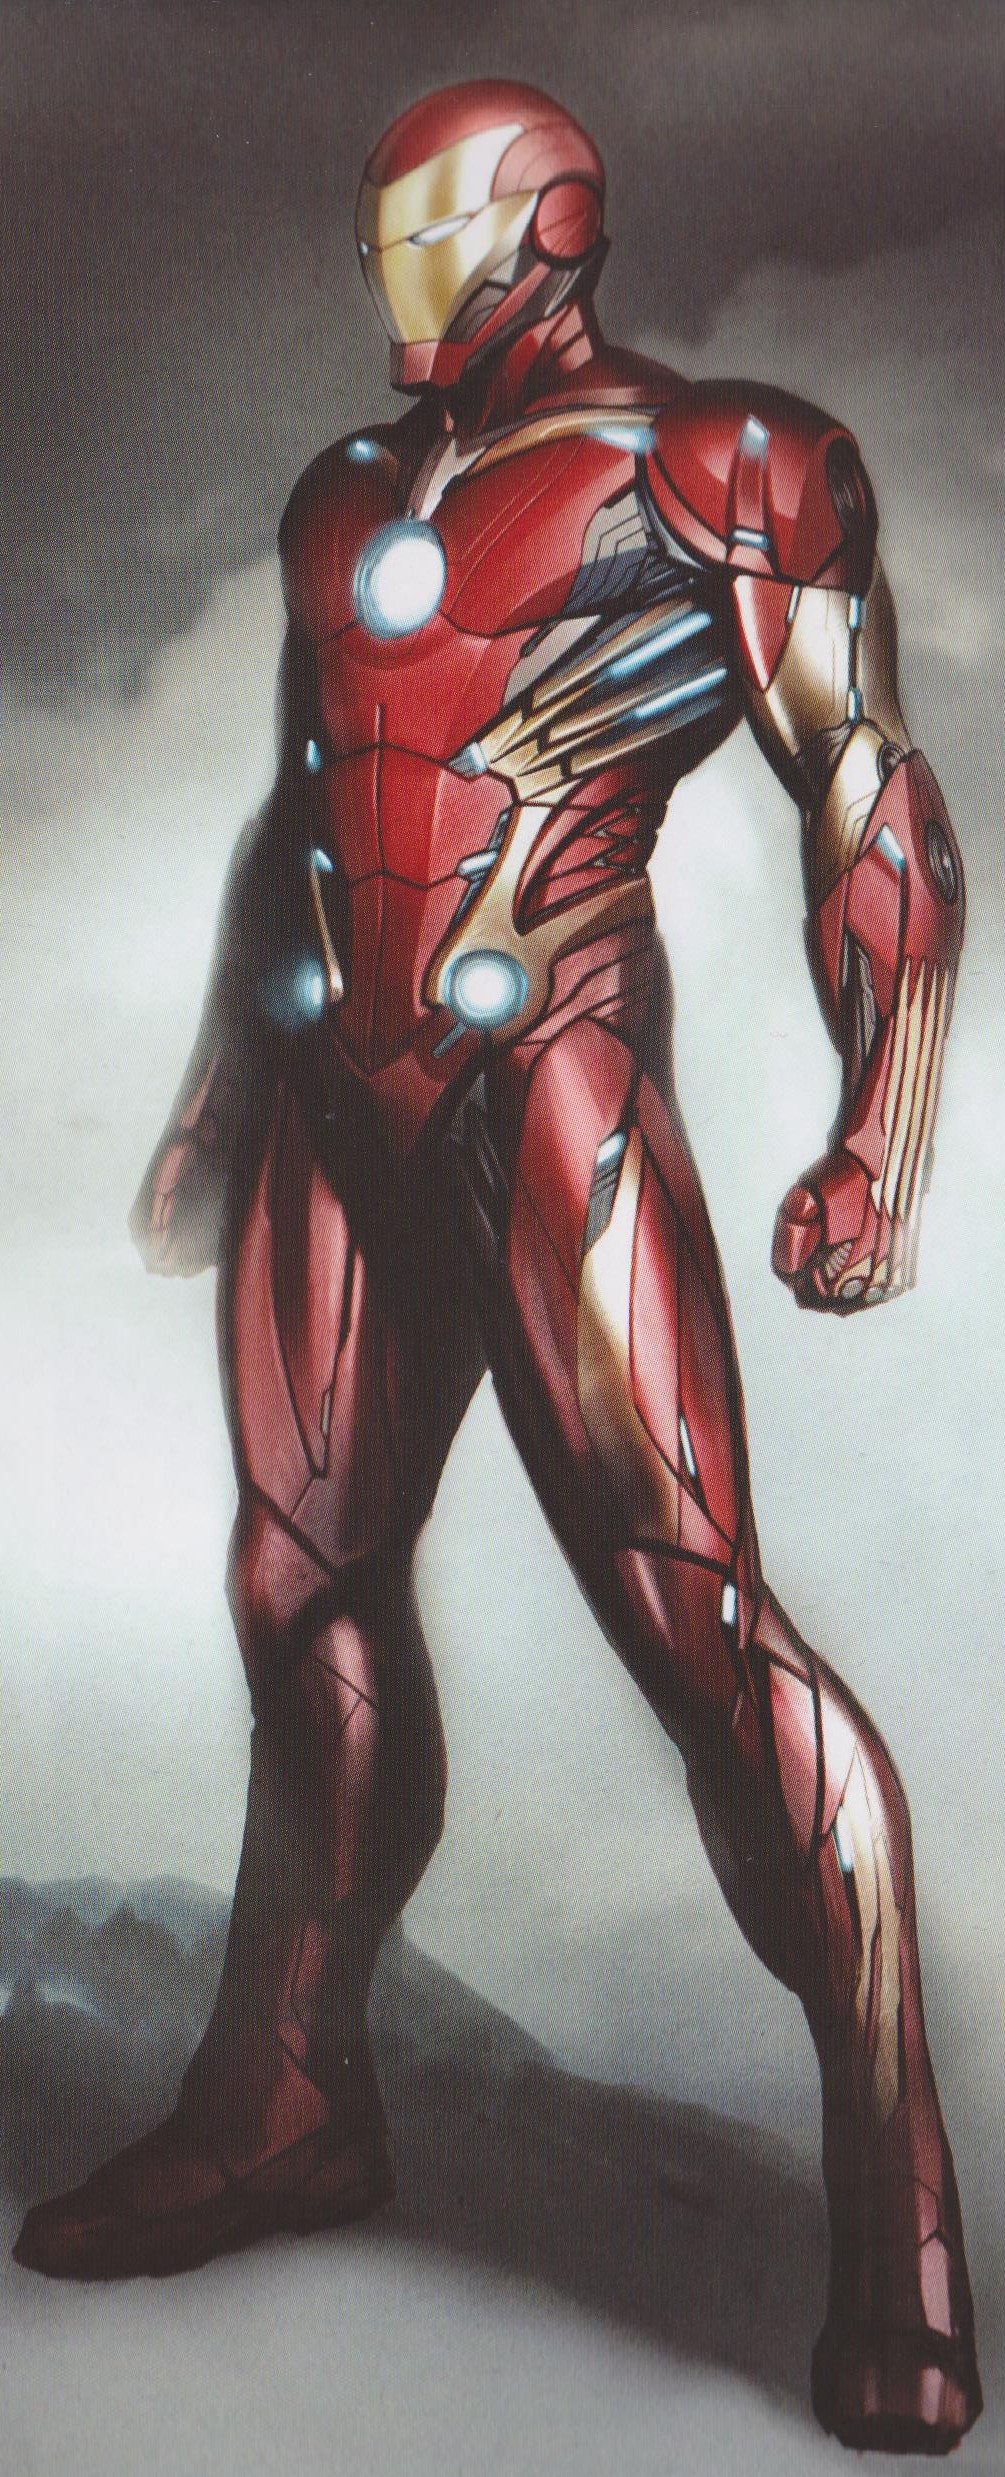 Image - Avengers Infinity War Iron Man concept art 4.jpg ...